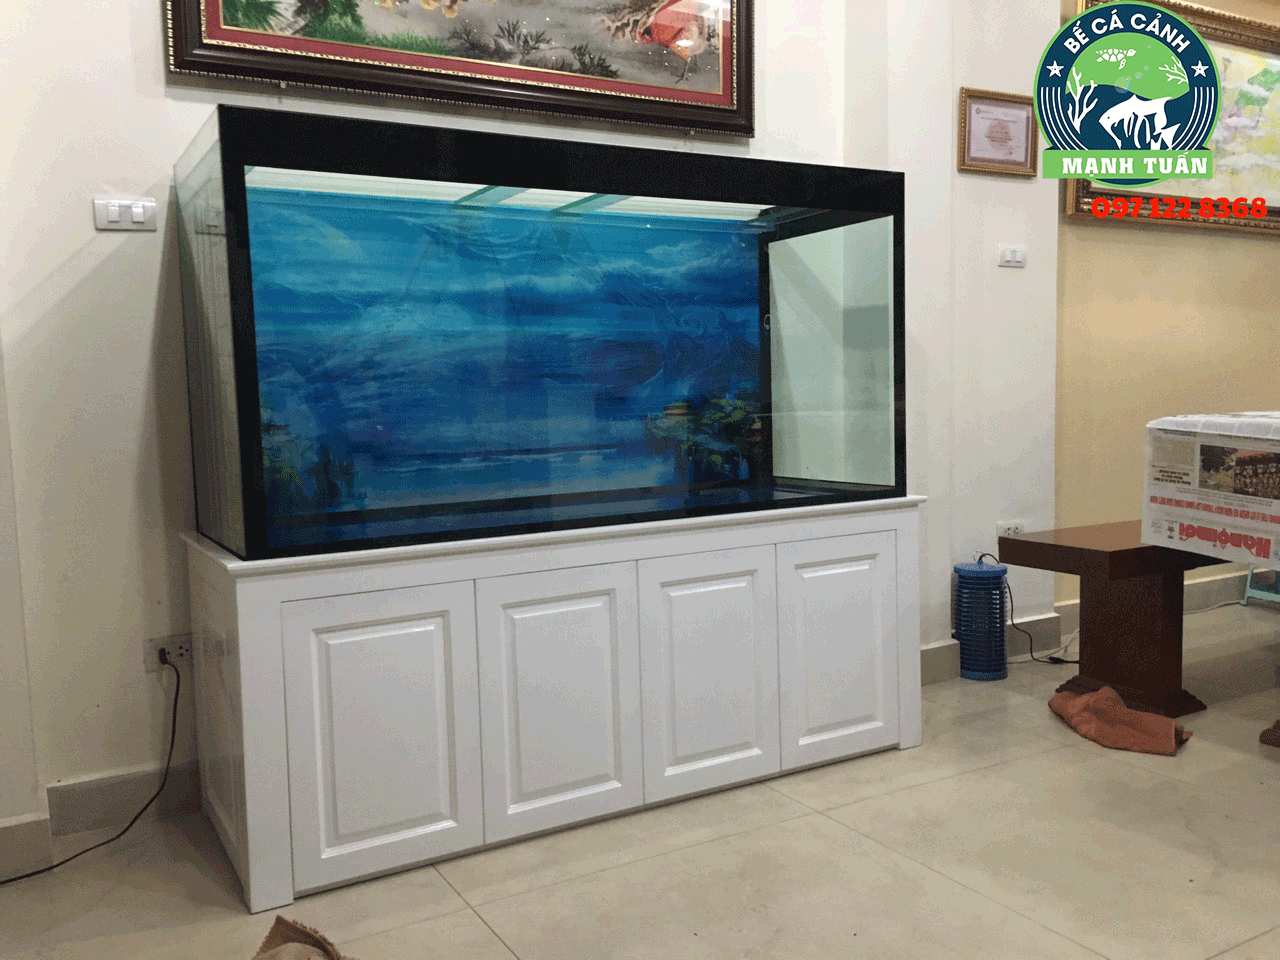 Thiết kế bể cá cho nhà chú Lương ở Dịch Vọng Cầu Giấy